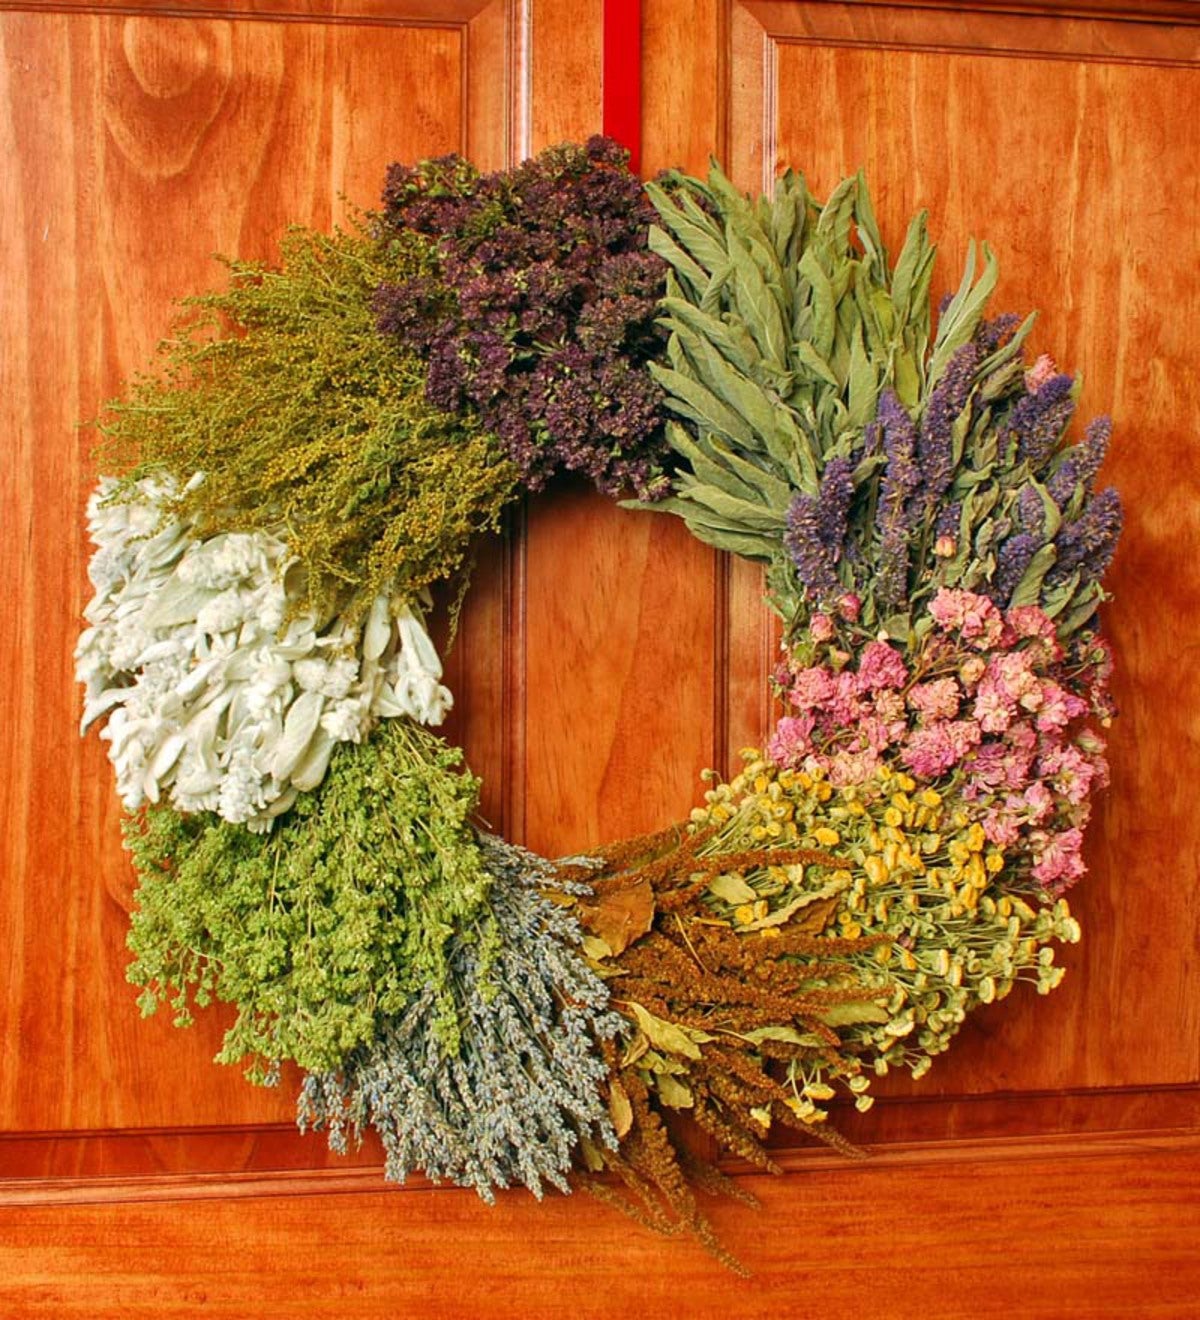 Ten Dried Herb Indoor Wreath